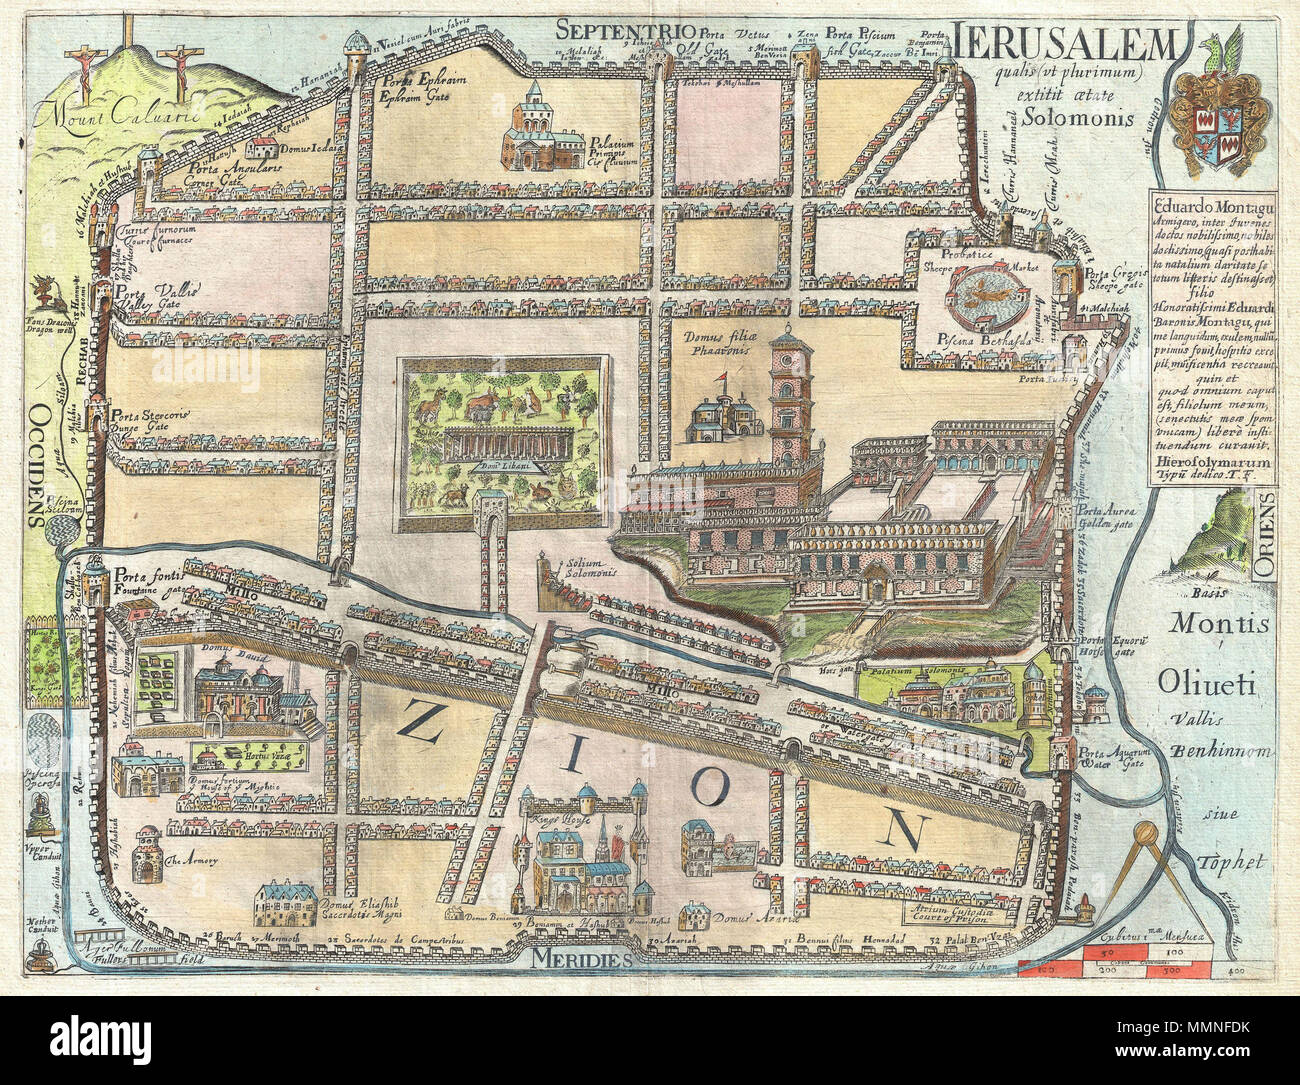 Inglés: extremadamente raro y totalmente fascinante 1650 Mapa de Jerusalén  por Thomas Fuller. Muestra la antigua ciudad amurallada de Jerusalén  durante el reinado del Rey Salomón bíblico, ca. 961-922 A.C. En